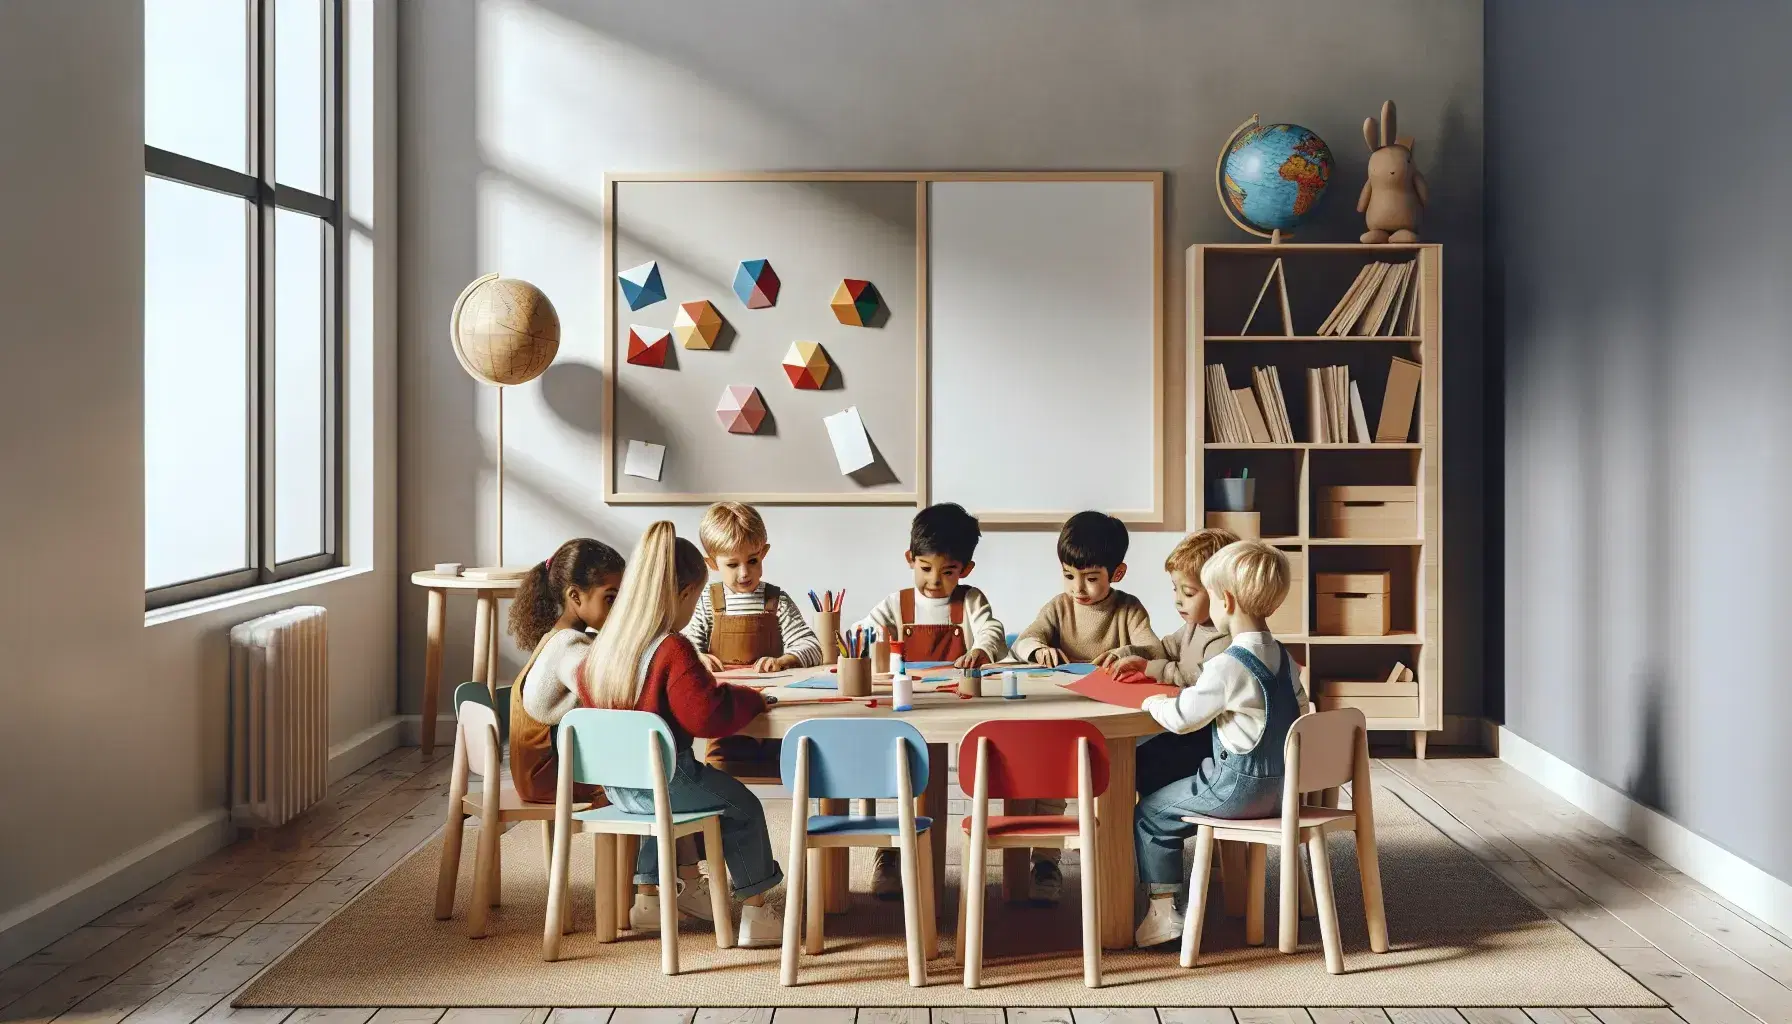 Aula escolar luminosa con niños de diversas etnias concentrados en actividad con papeles de colores, tijeras y pegamento en mesa redonda y estantería con objetos educativos al fondo.